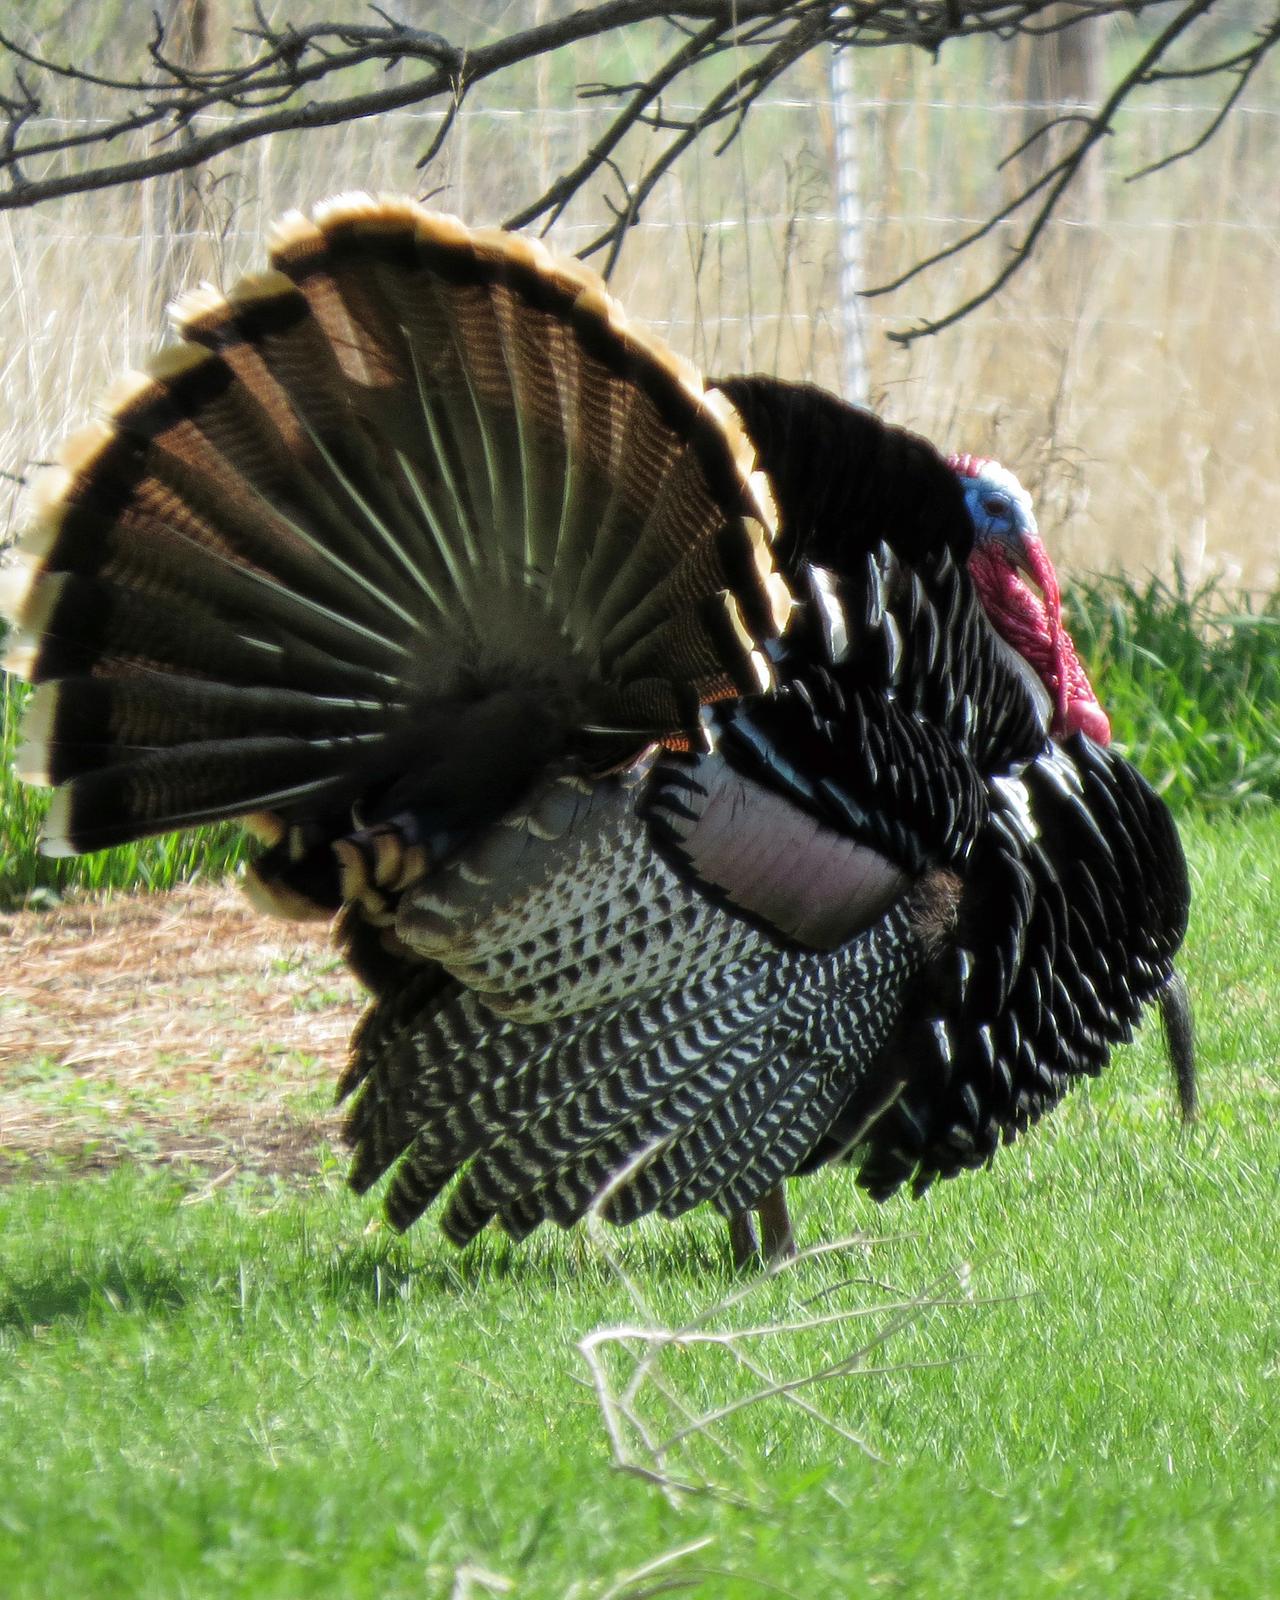 Wild Turkey Photo by Kelly Preheim